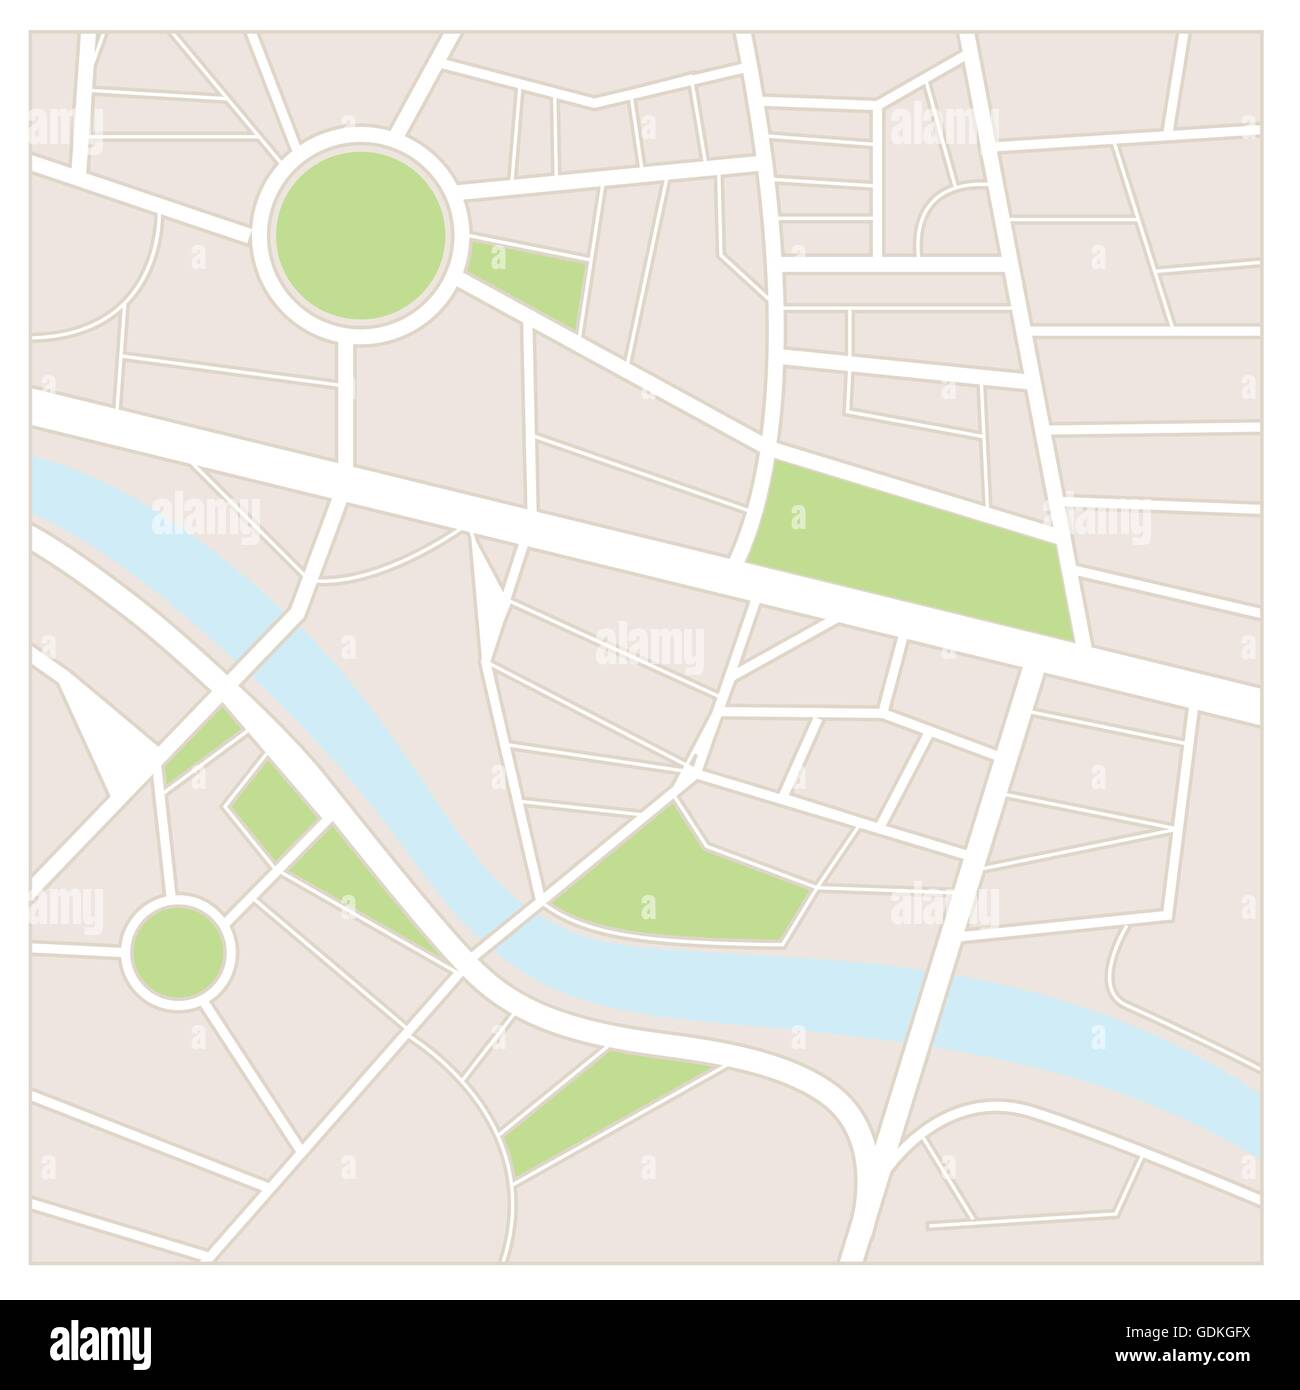 Stadtplan mit Straßen, Gärten und ein Fluss Stock Vektor